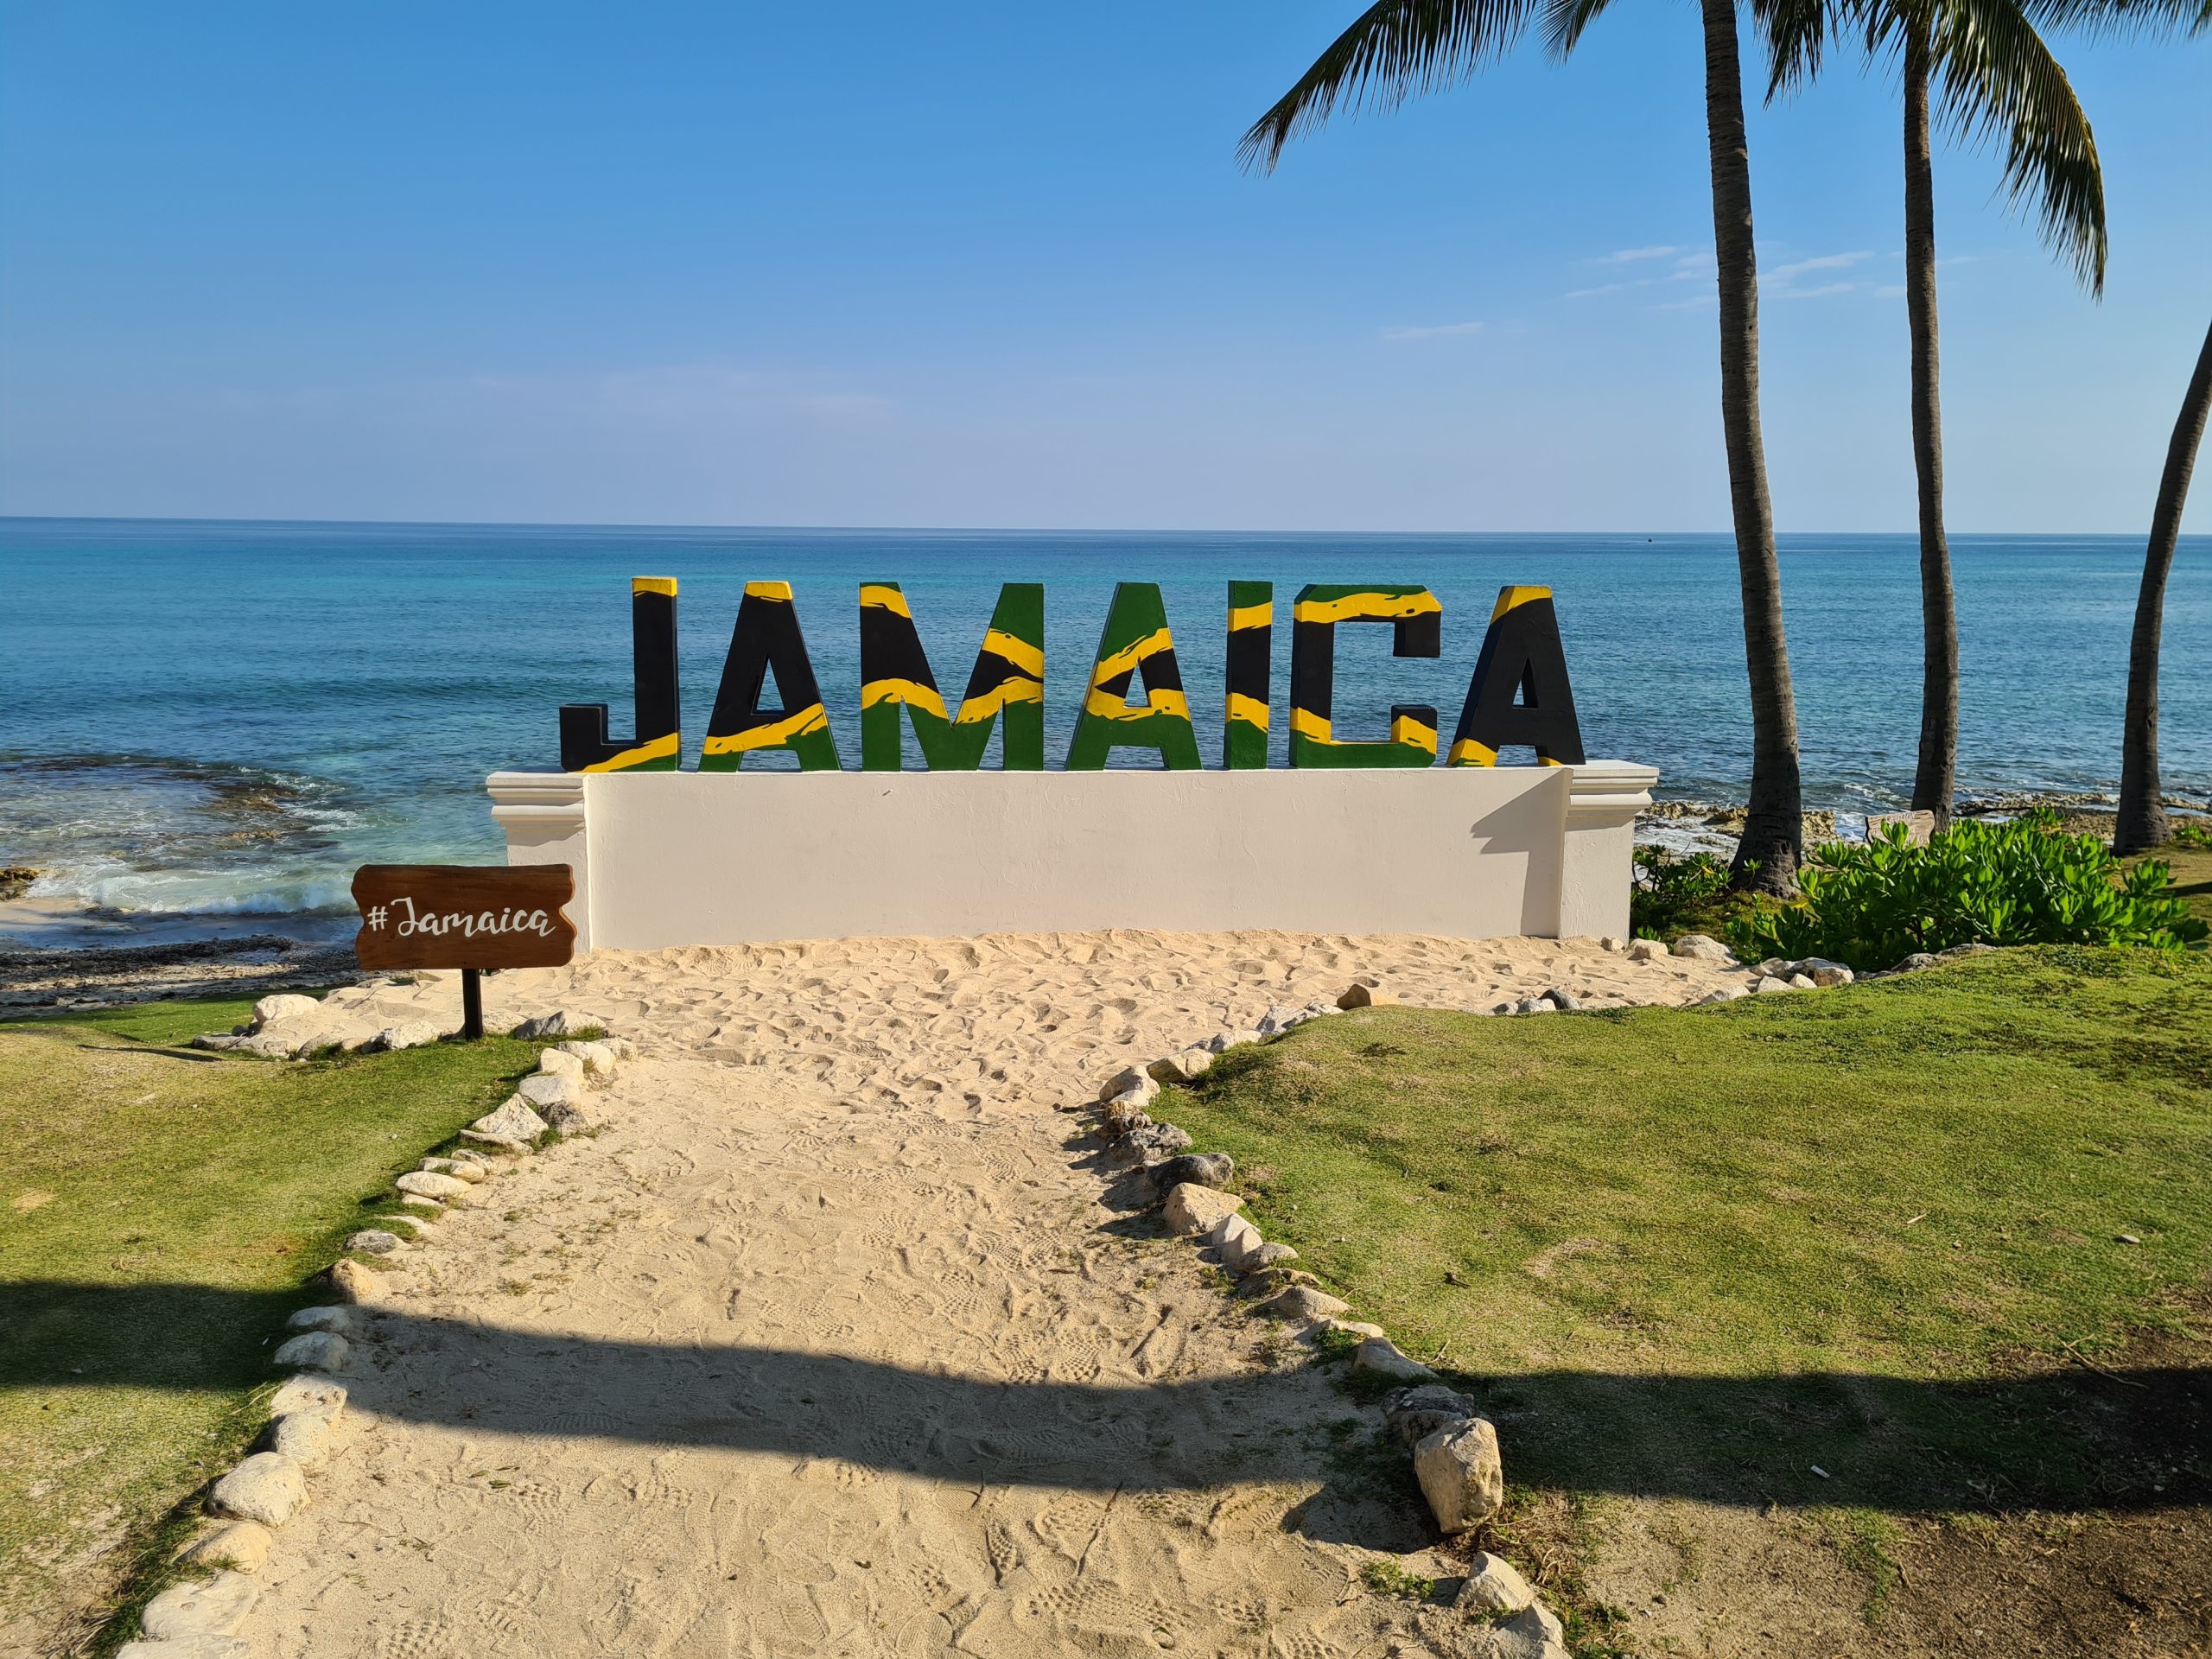 What to expect when visiting Hyatt Zilara & Hyatt Ziva Rose Hall Jamaica